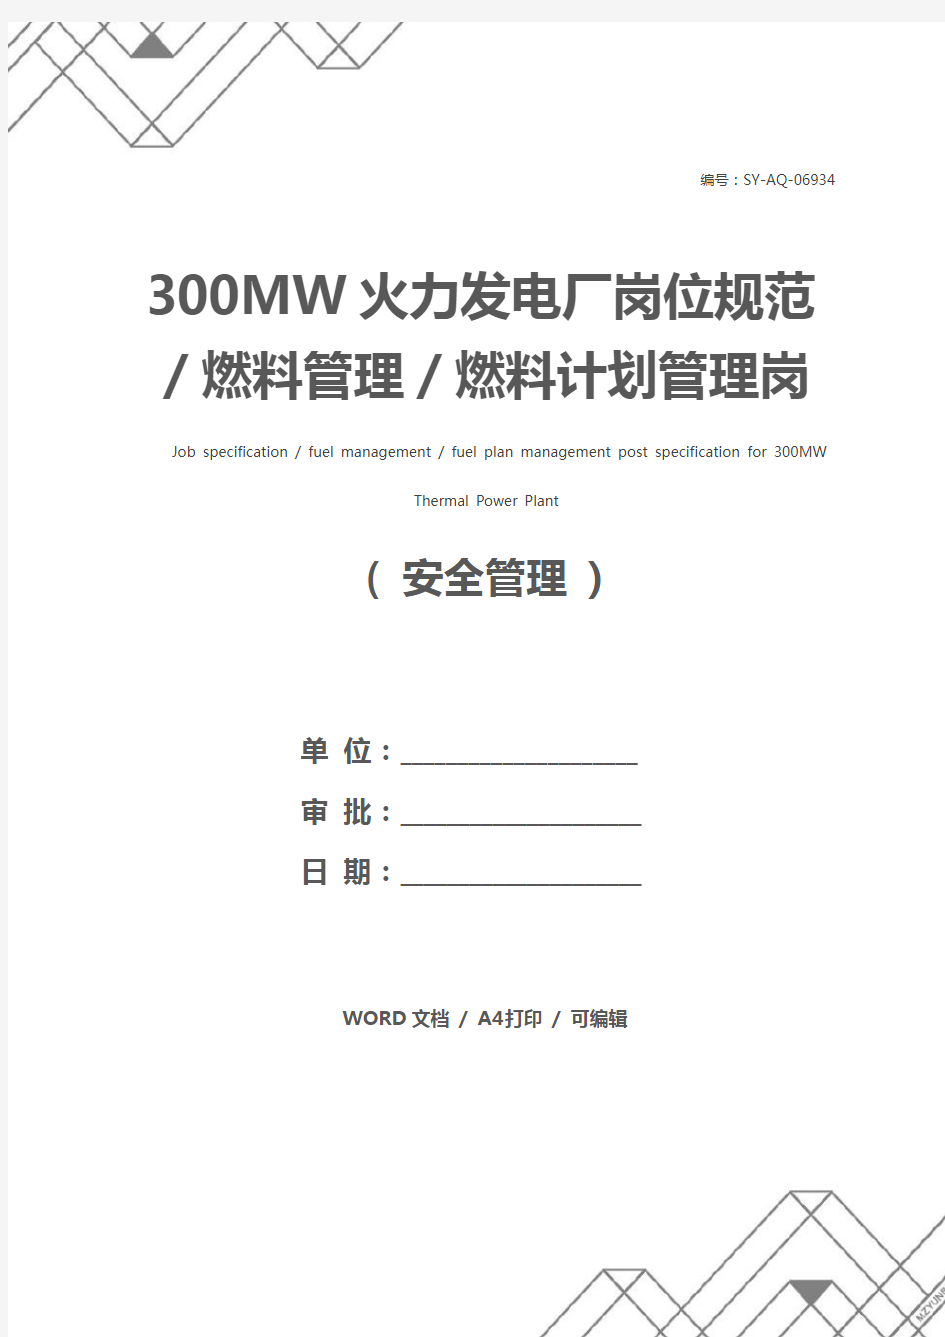 300MW火力发电厂岗位规范／燃料管理／燃料计划管理岗位规范